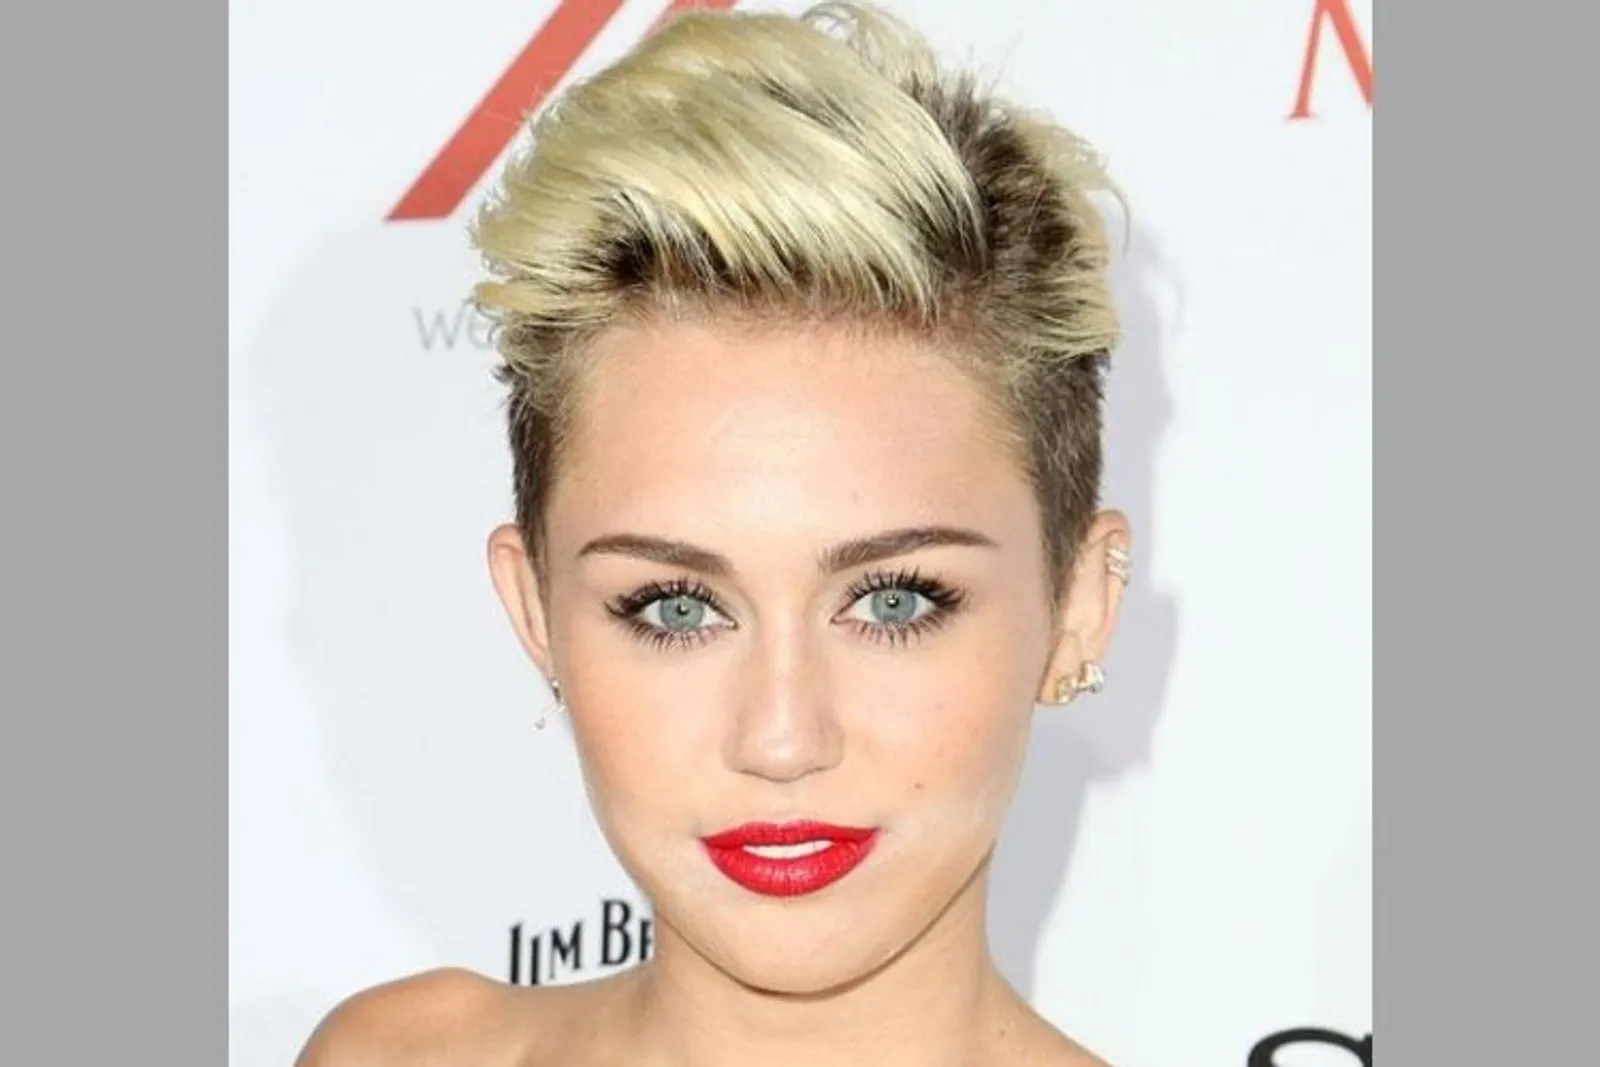 Mulai dari Gadis Polos hingga Jadi Liar, Ini Transformasi Miley Cyrus